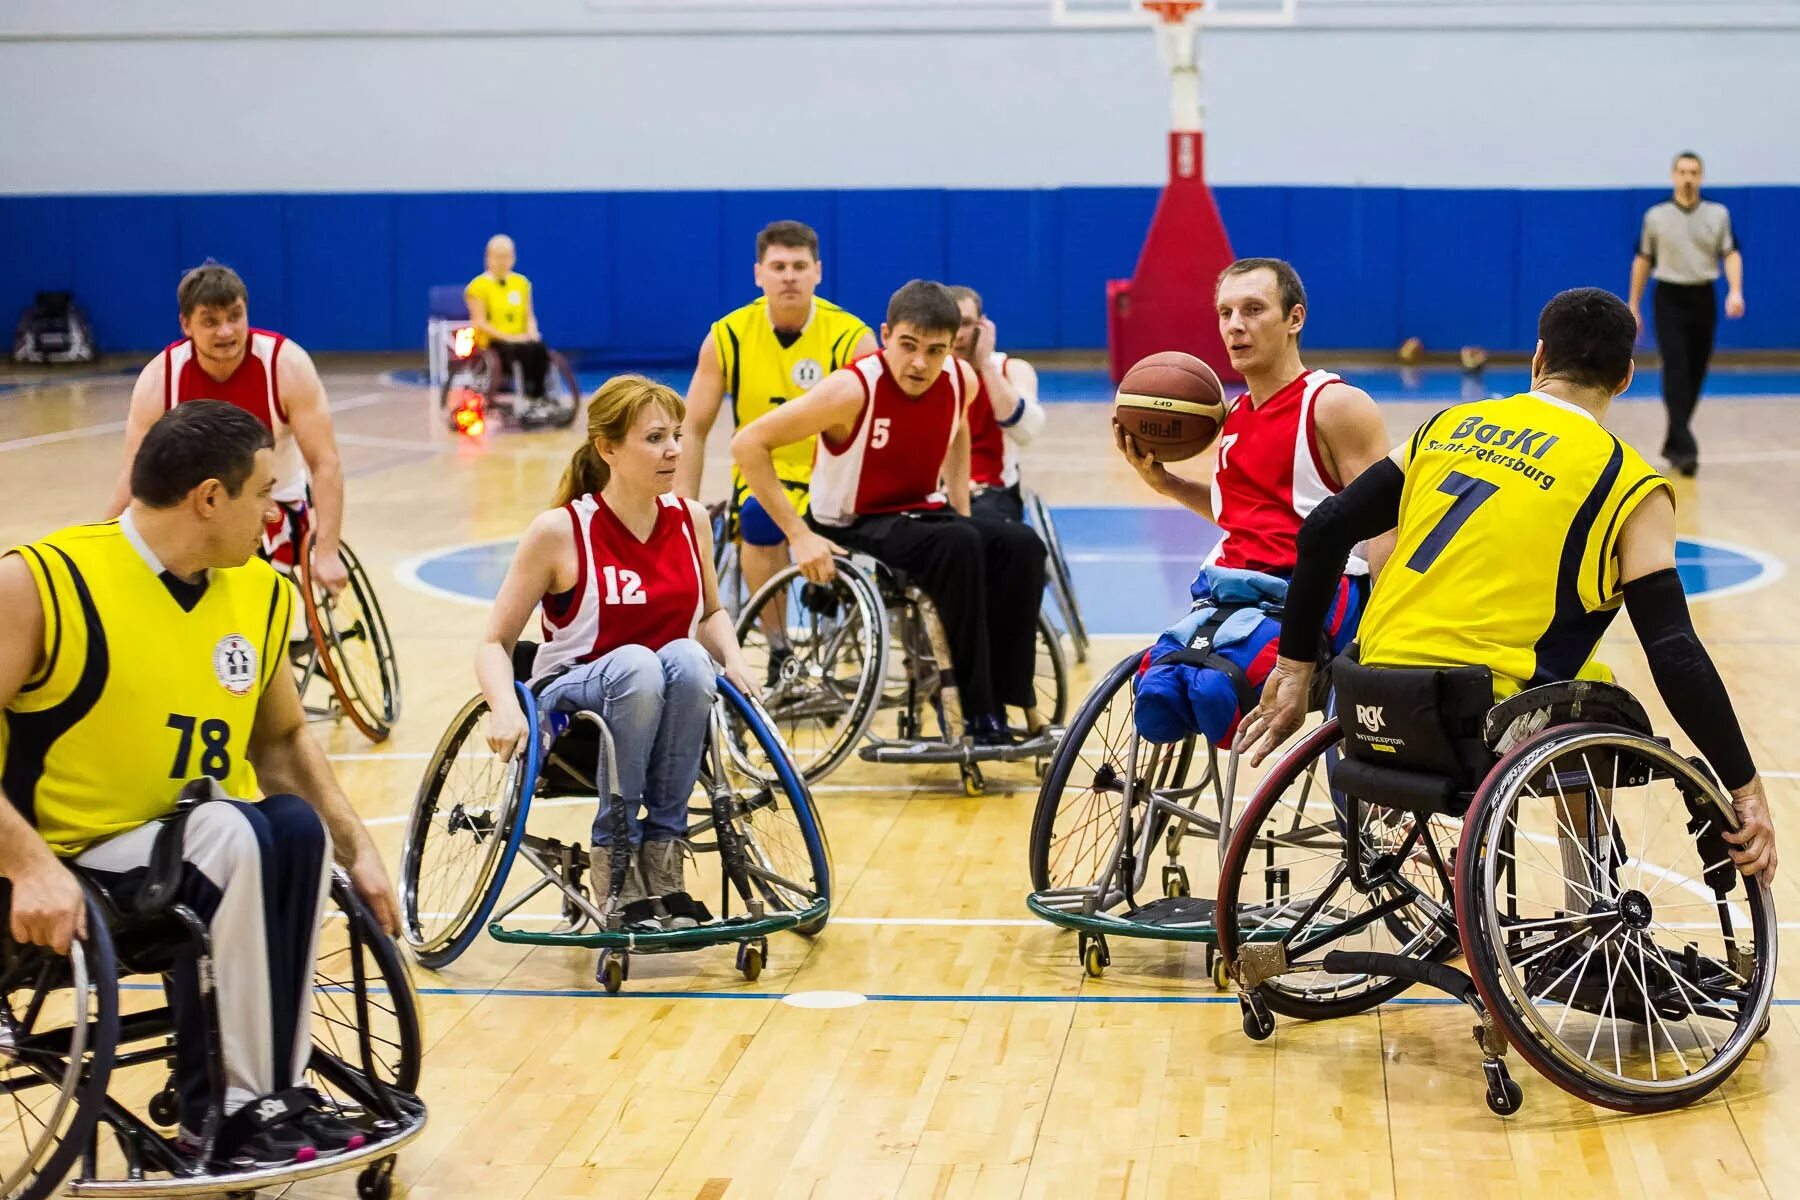 Инвалиды занимаются спортом. Спорт для инвалидов. Спортивные соревнования инвалидов. Спорт для людей с ограниченными возможностями. Спорт с оораниченными возможность.